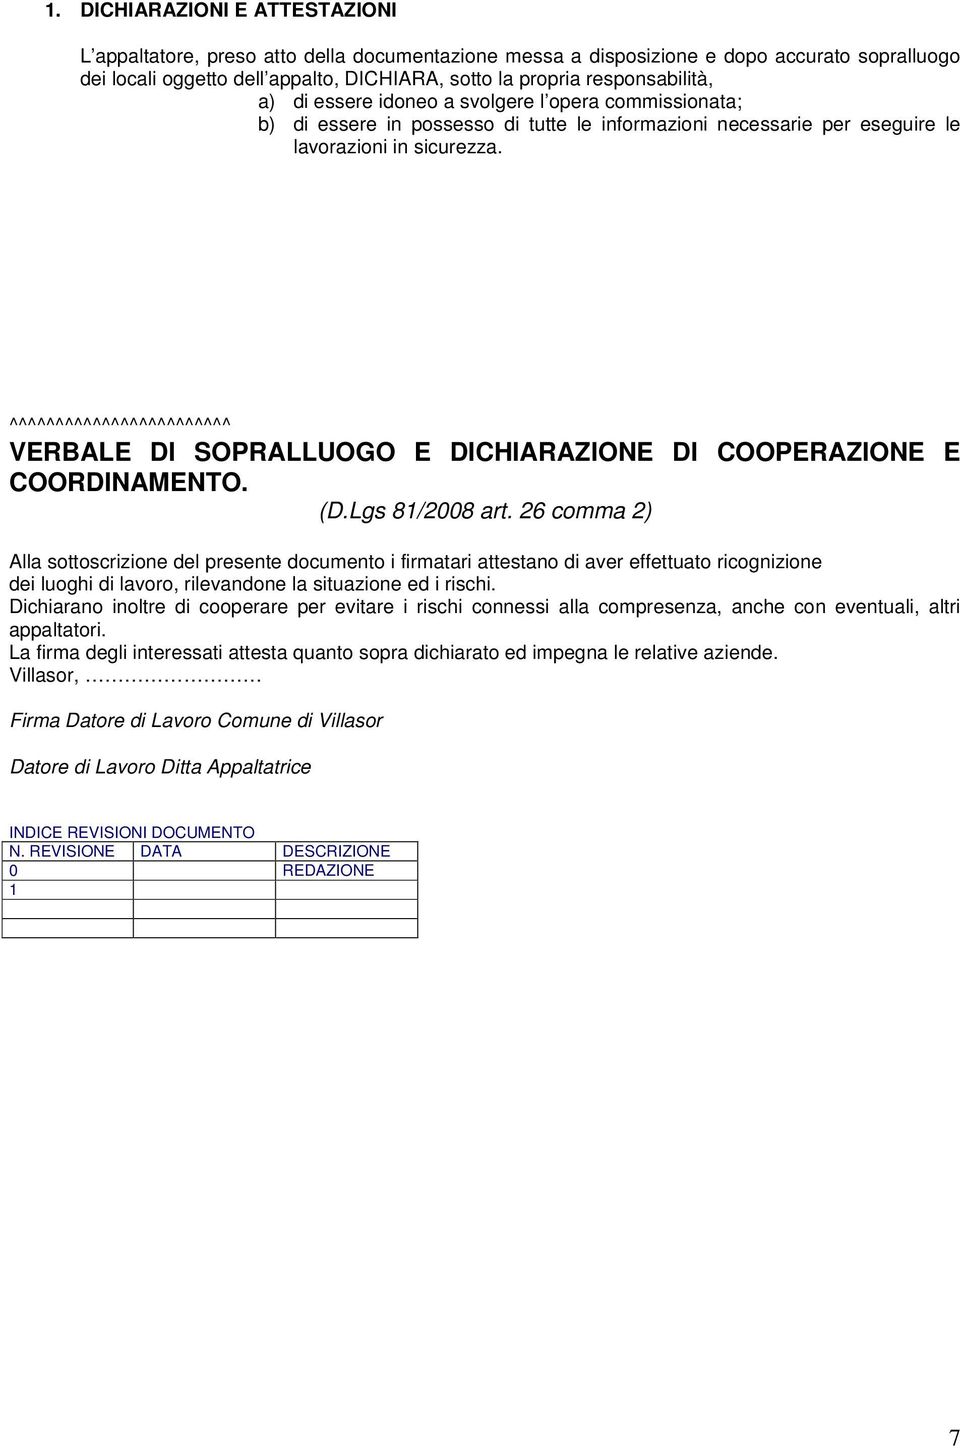 ^^^^^^^^^^^^^^^^^^^^^^^^ VERBALE DI SOPRALLUOGO E DICHIARAZIONE DI COOPERAZIONE E COORDINAMENTO. (D.Lgs 81/2008 art.